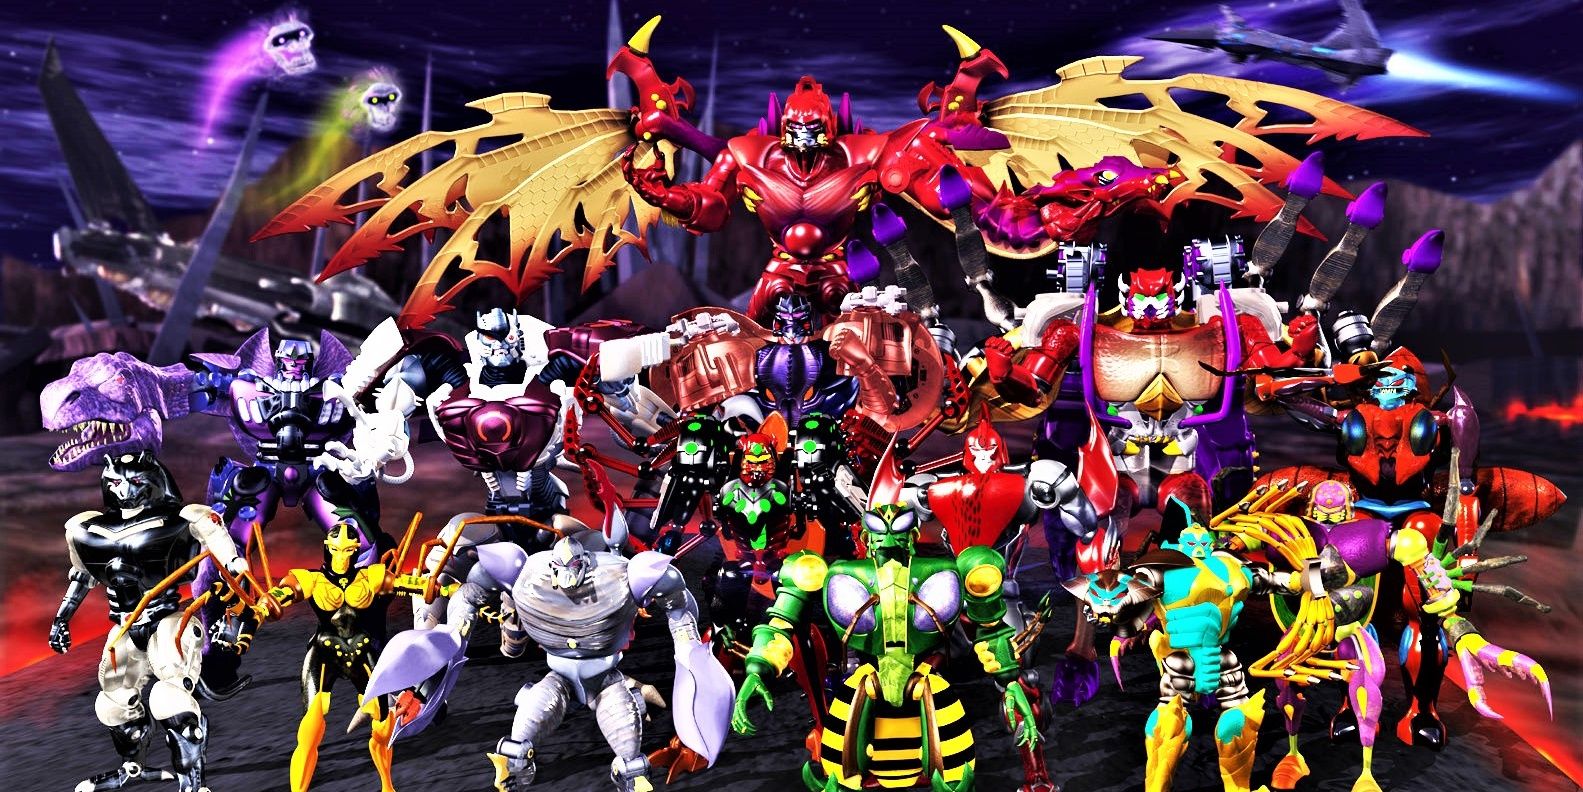 Predacons dans la série animée Beast Wars Transformers.